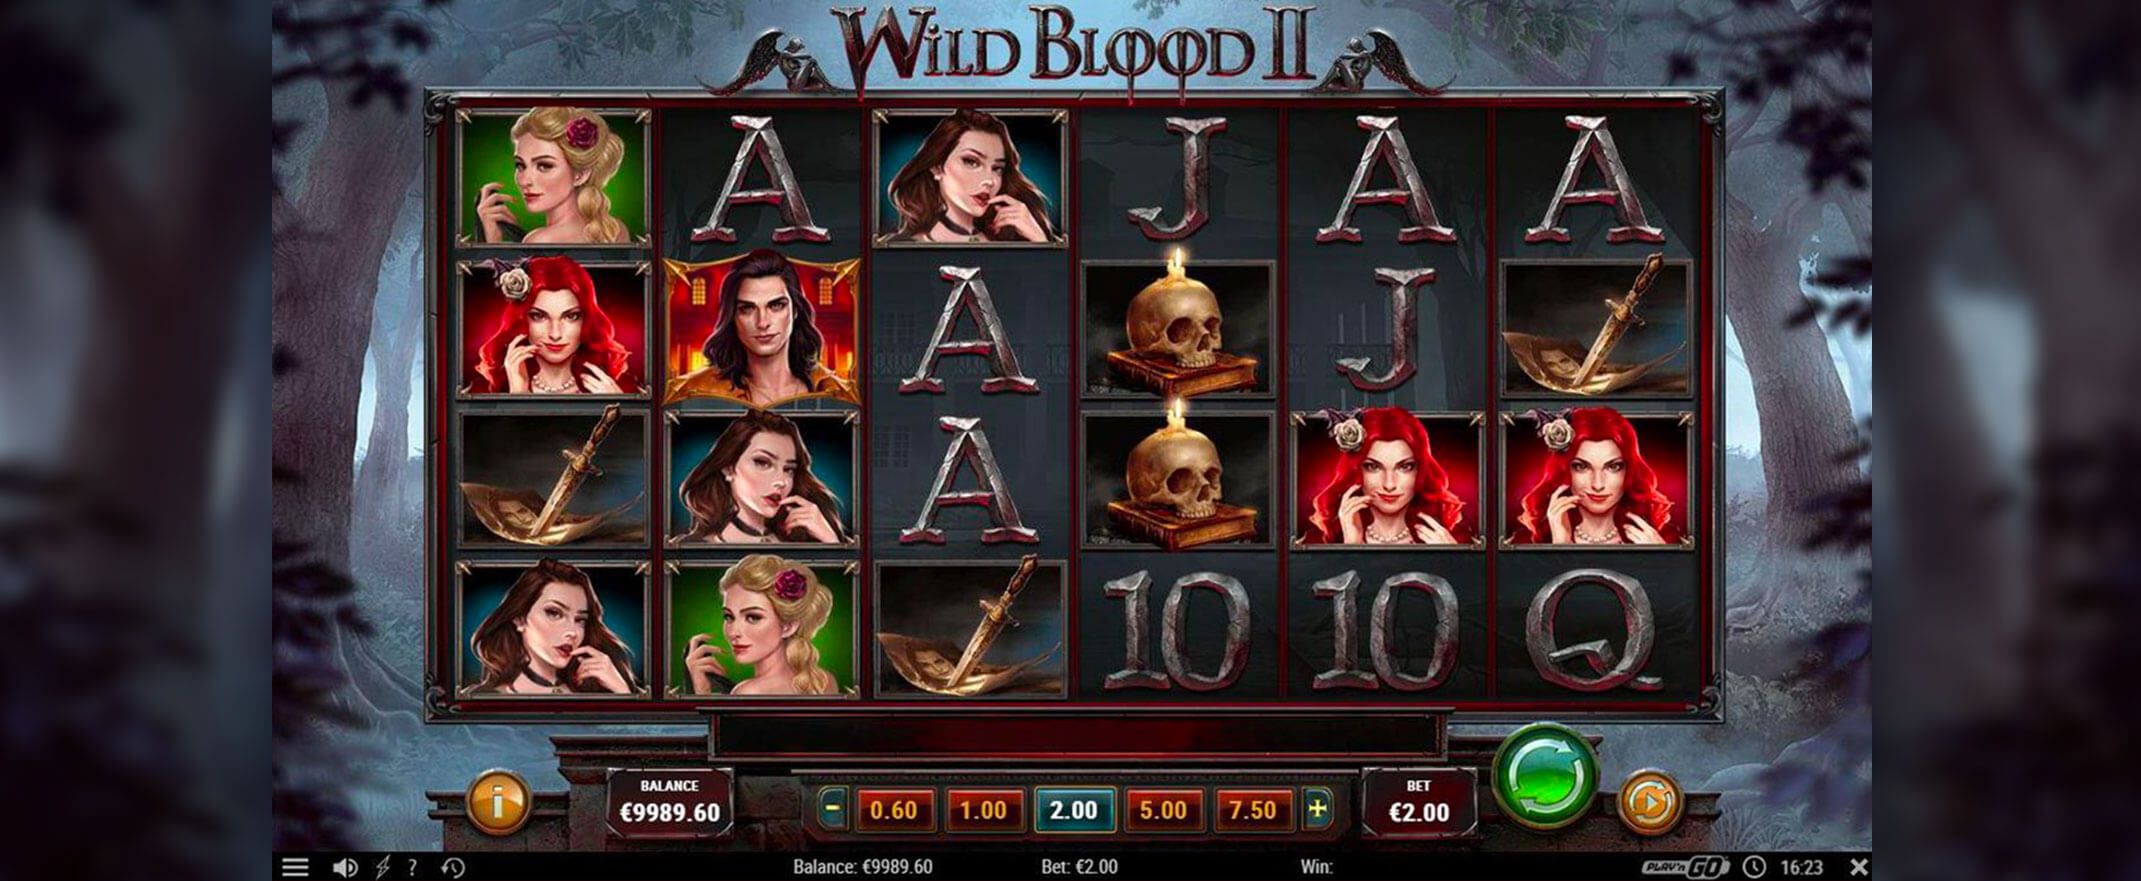 Wild Blood 2 Spielautomat spielen